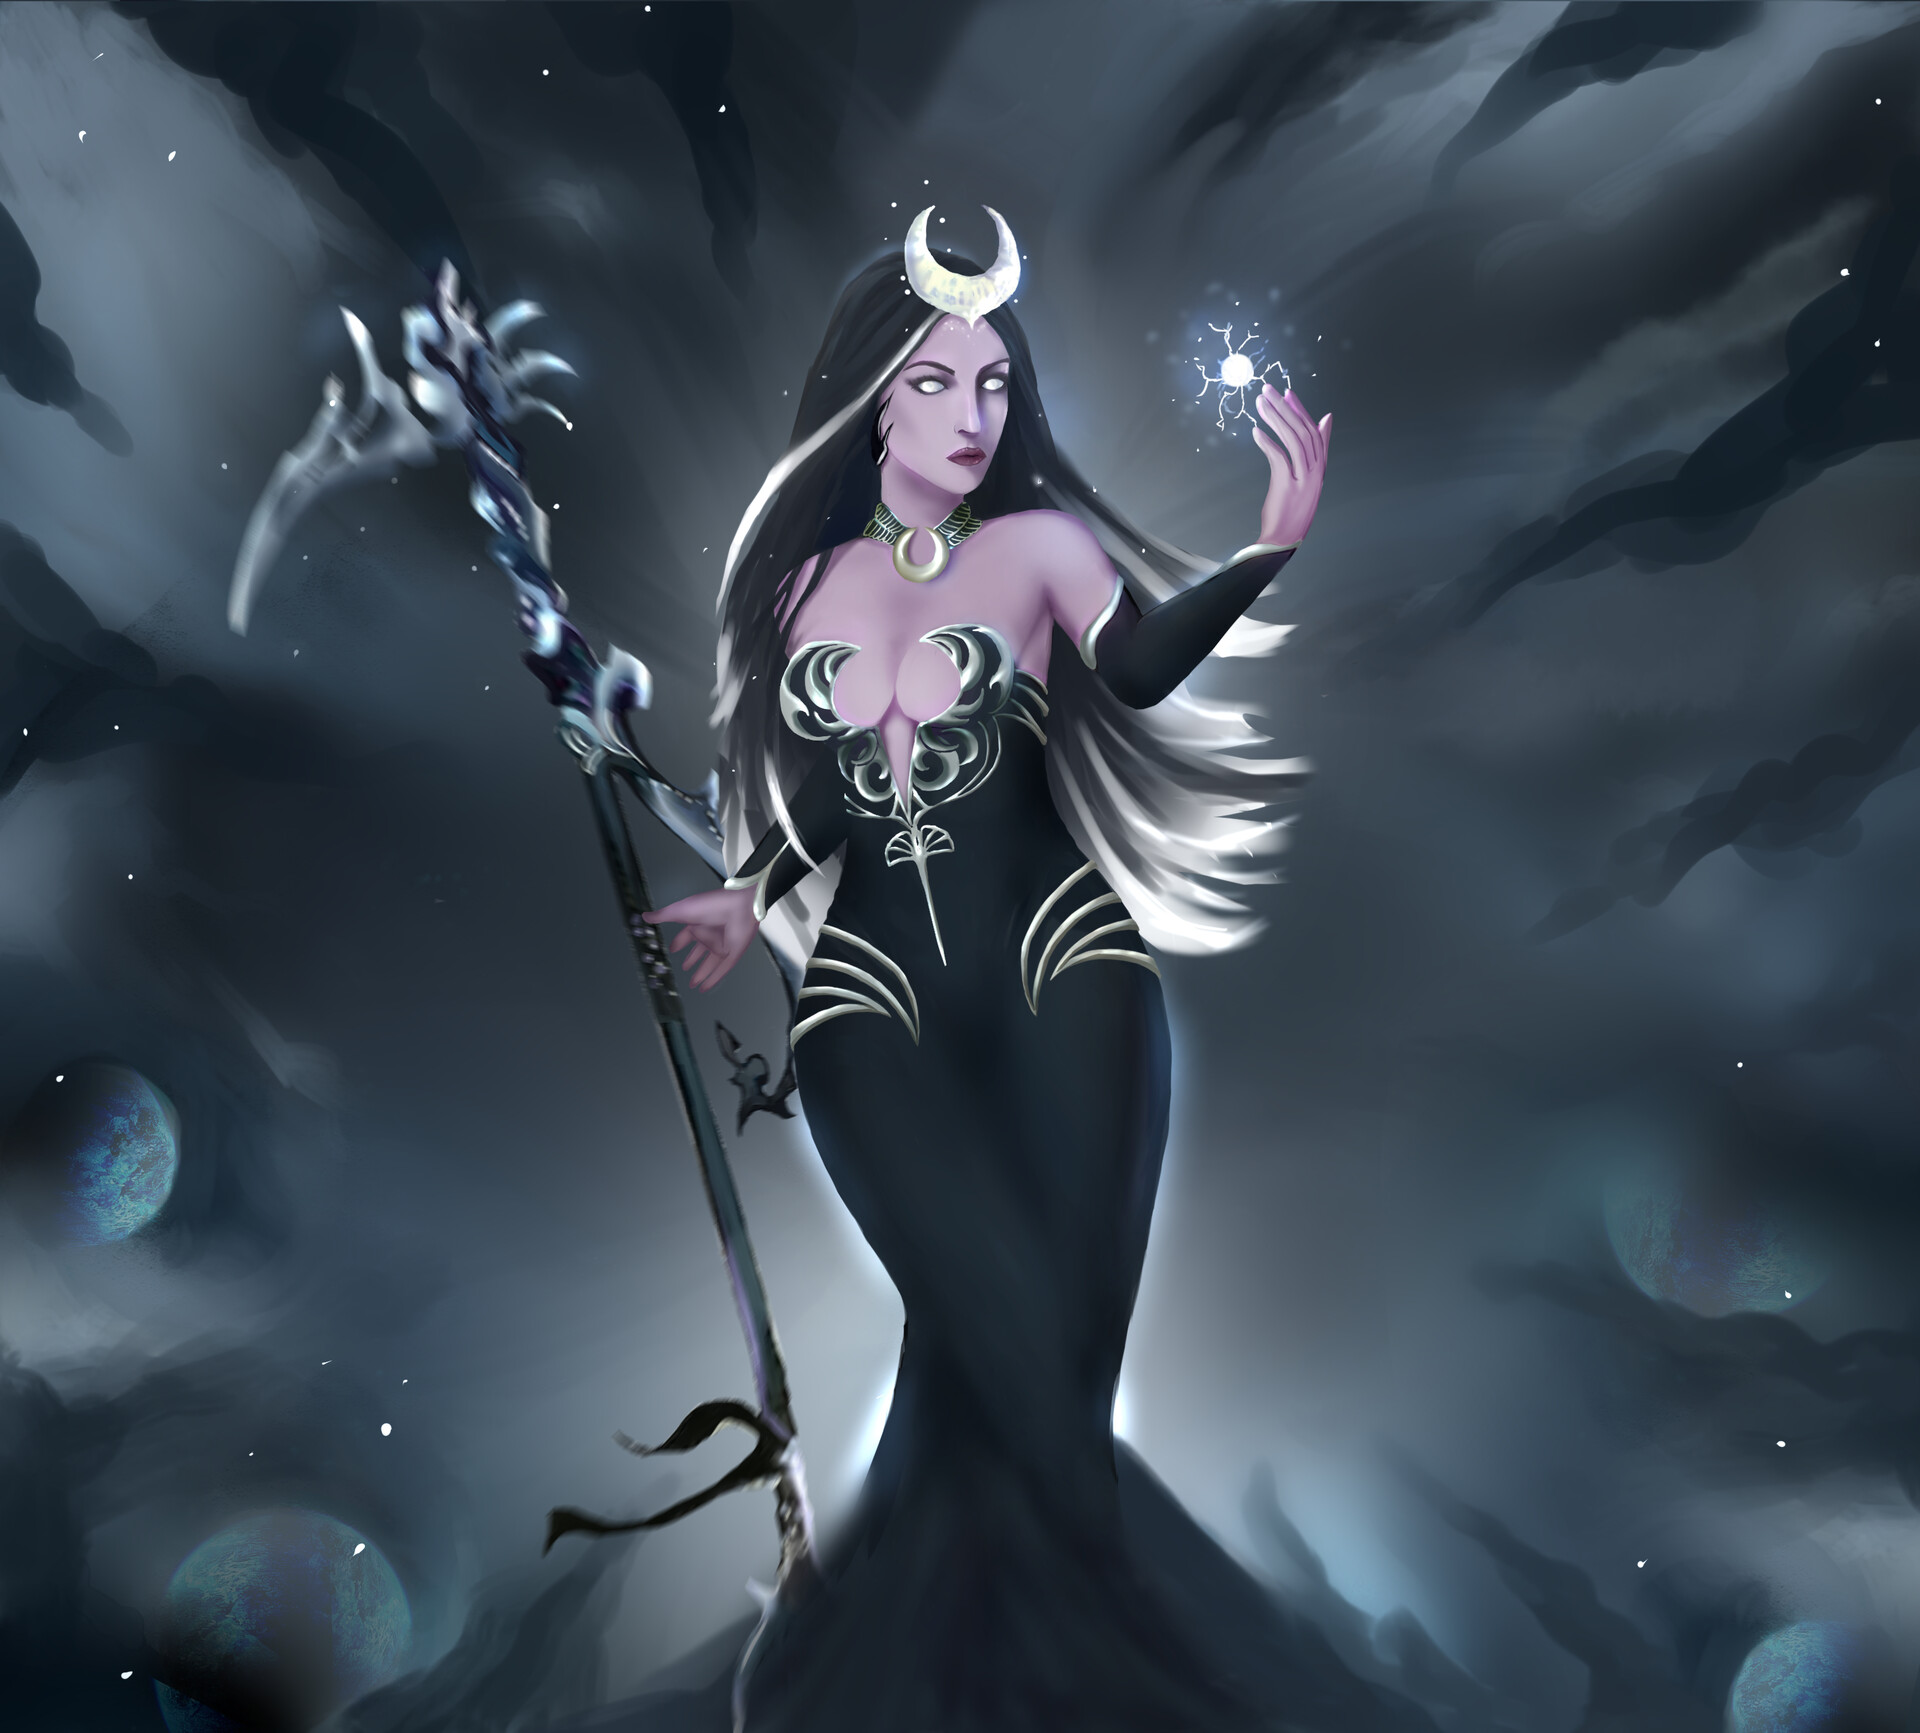 ArtStation - Nyx- The Goddess of night